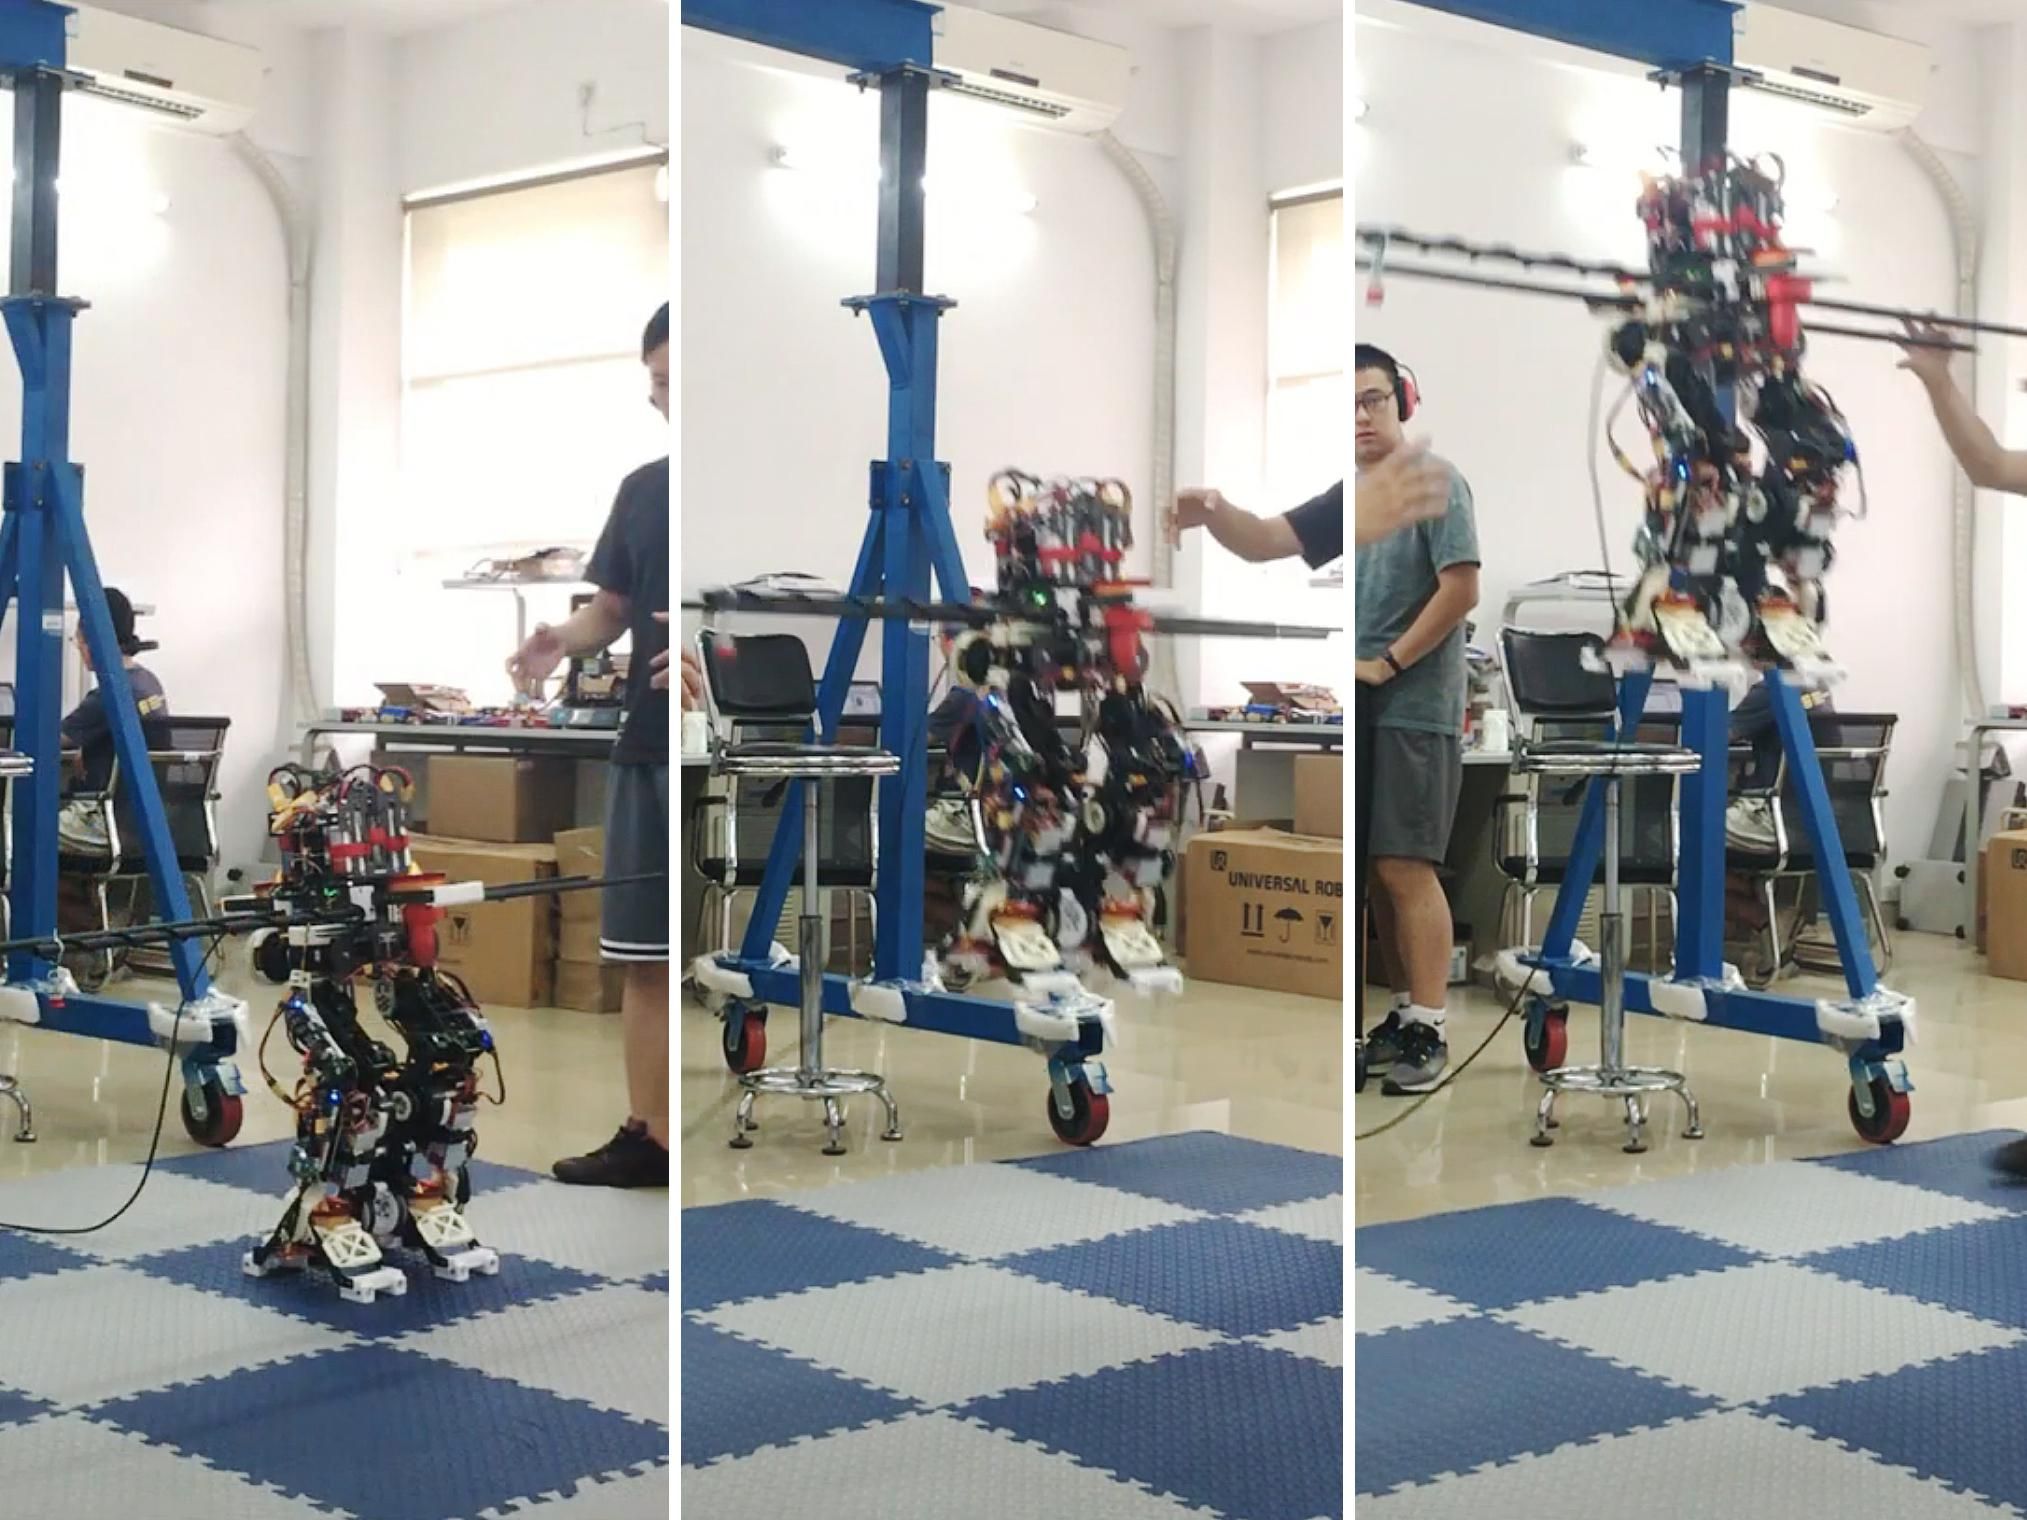 Découvrez Pibot, le robot humanoïde capable de piloter un avion en toute  sécurité mieux qu'un humain